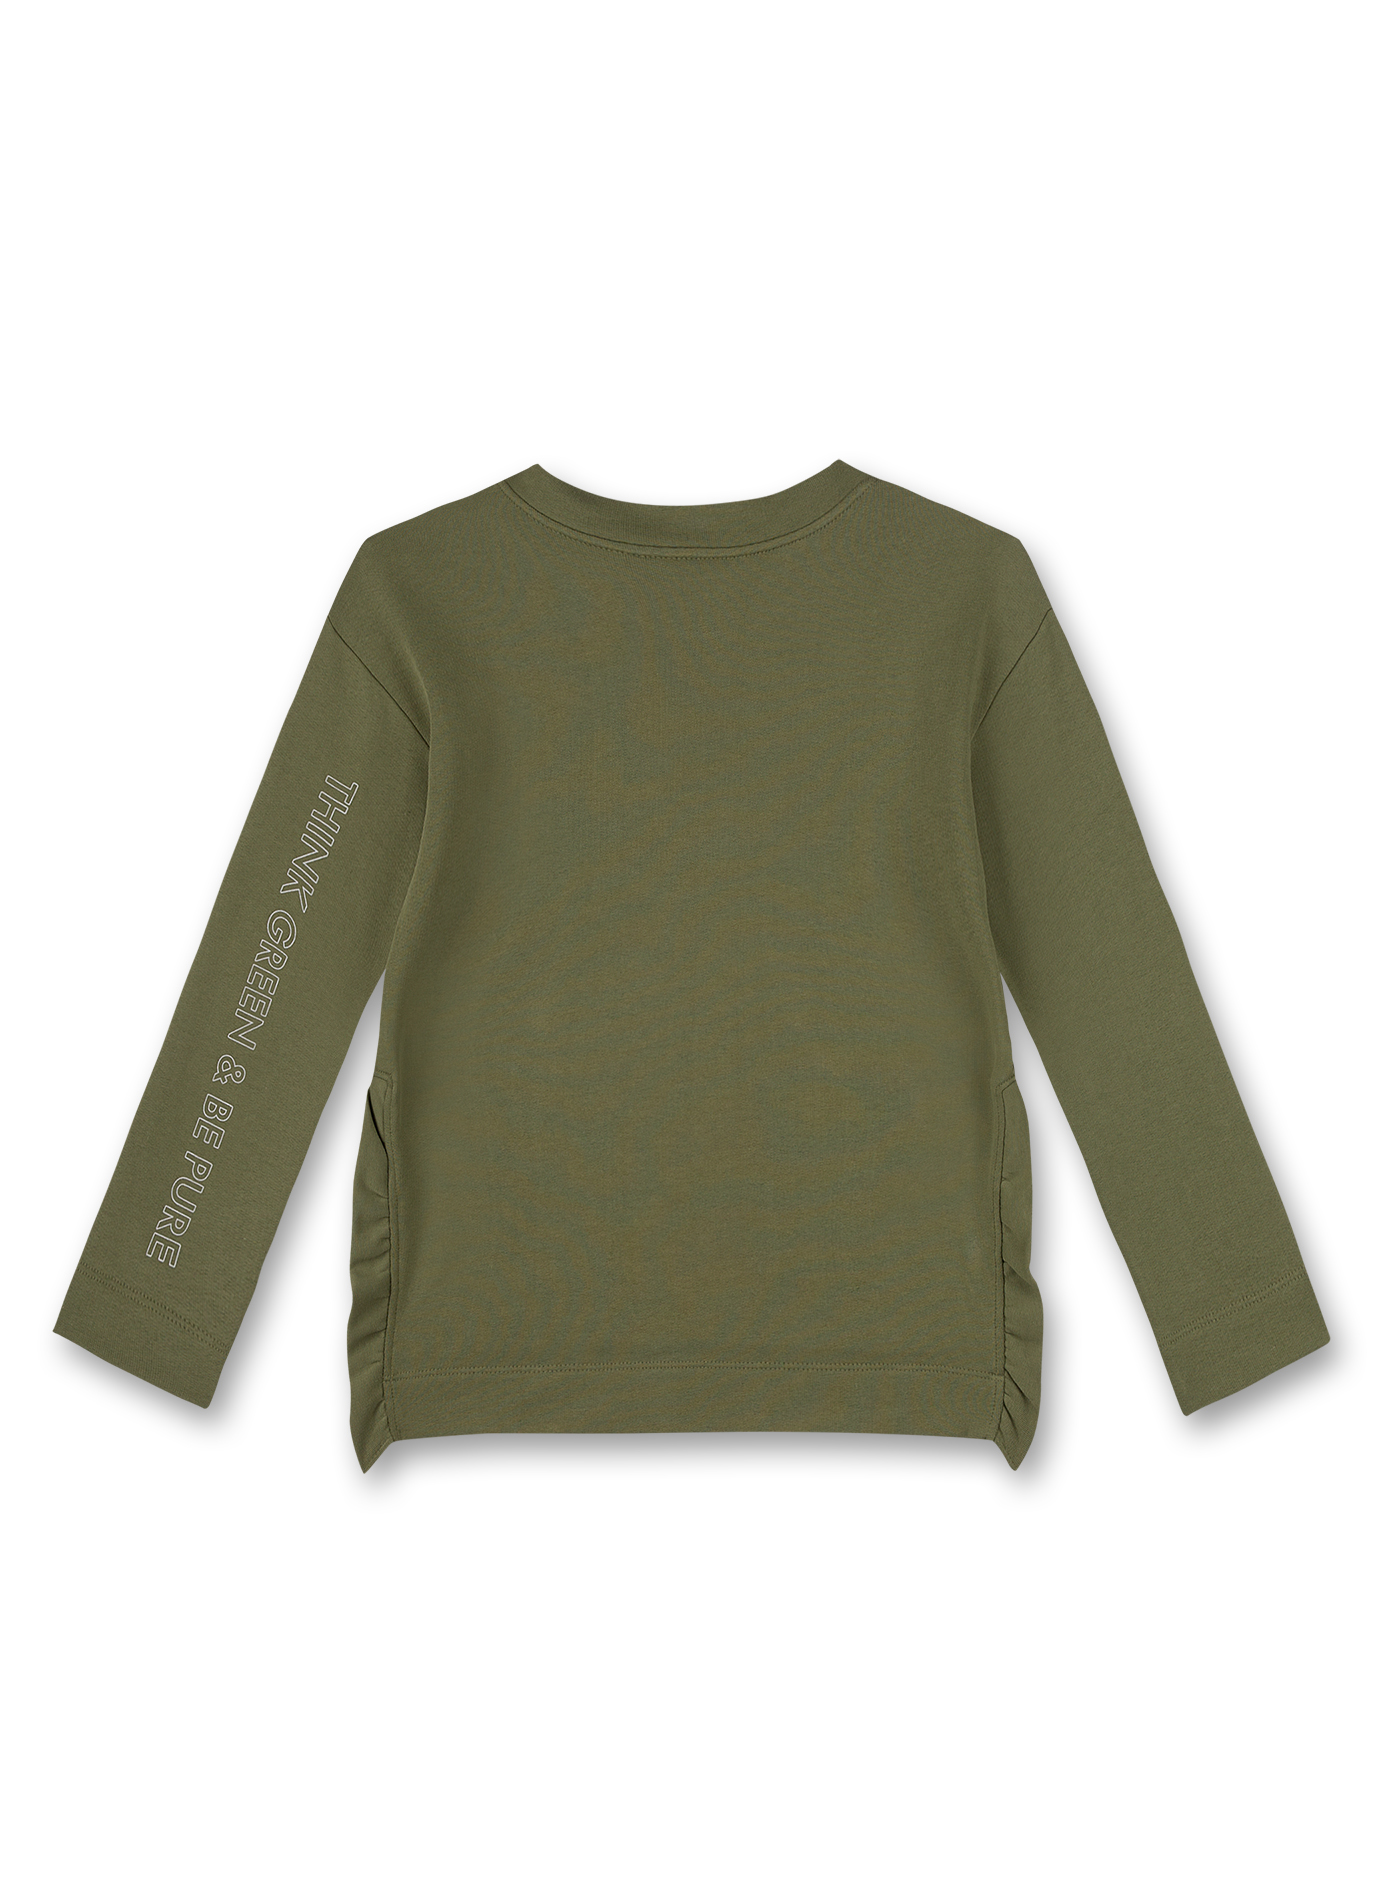 Mädchen-Sweatshirt Grün